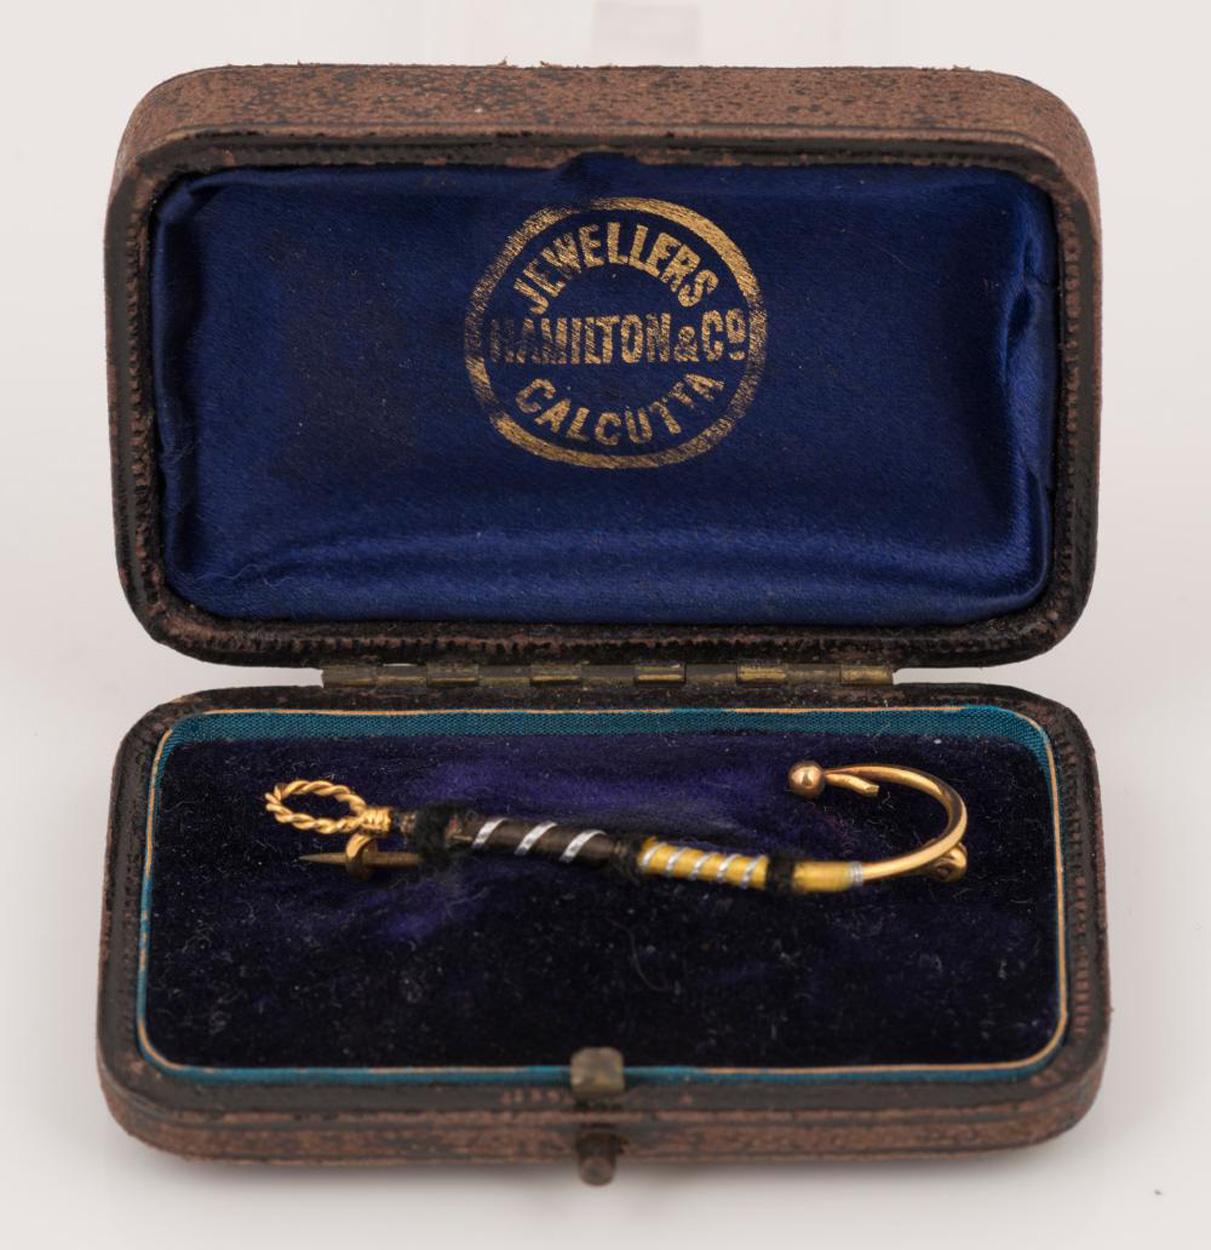 Eine seltene und begehrte Brosche aus 9 Karat Gold in Form eines gebundenen Fliegenfischer-Köders, vertrieben von Hamilton & Co, Kalkutta,  1,7 Gramm.

Robert Hamilton (1772-1848) kam in Indien an und nahm 1808 seine Arbeit in Kalkutta auf. Im Jahr